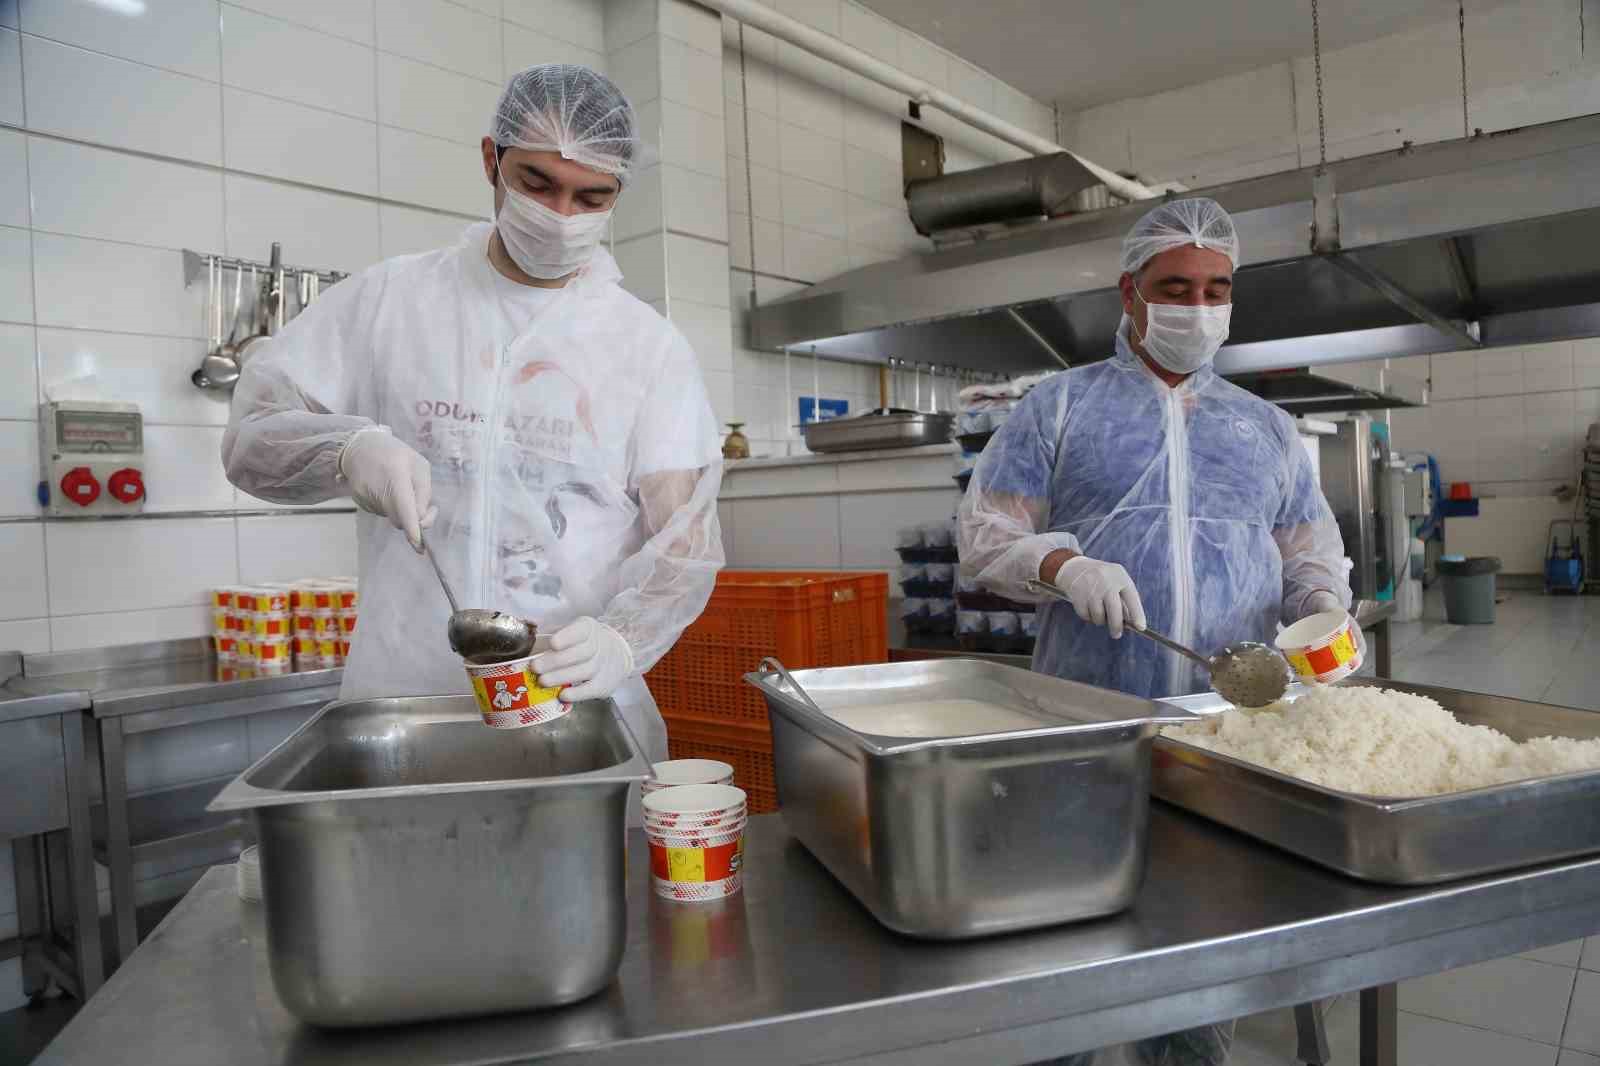 Odunpazarı Belediyesi Aşevi’nden 3 milyon porsiyon sıcak yemek yardımı
